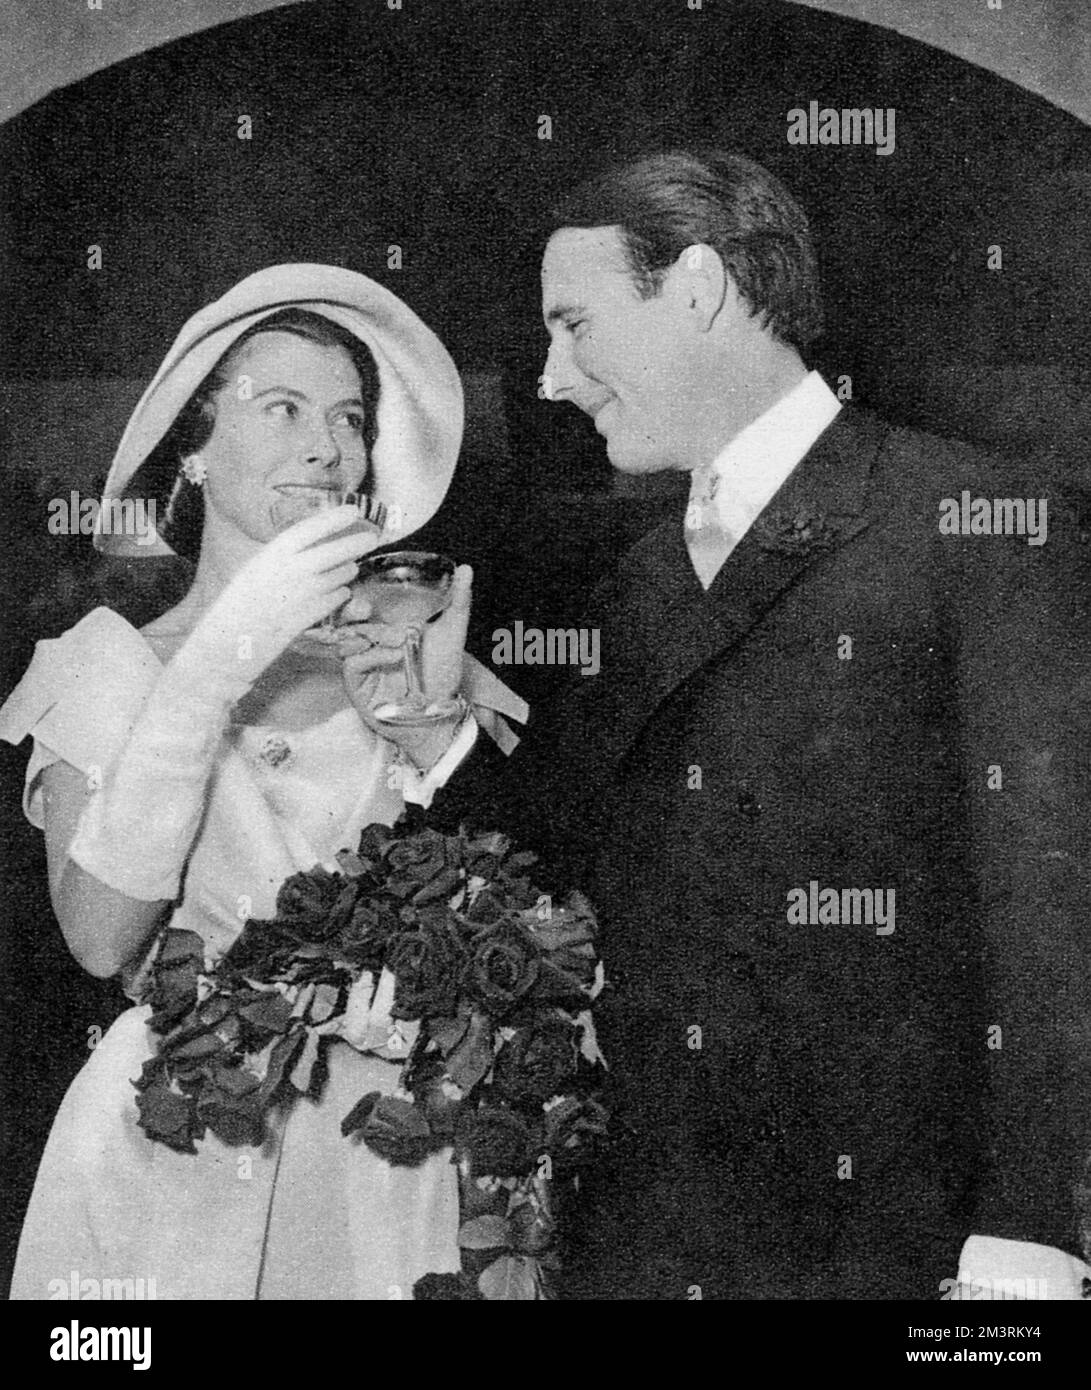 Il principe Sadruddin e Nina Dyer il giorno del loro matrimonio. Il figlio minore del defunto Aga Khan, il principe Sadruddin Khan, sposò il modello, Nina Dyer, in Svizzera. Nina Dyer era precedentemente sposata con l'industriale, Barone Heinrich von Thyssen. Il loro matrimonio si sciolse nel 1956 e, dopo essere stata impegnata con il principe Sadruddin, adottò la fede dell'Islam e cambiò il suo nome in Shirin, che significa 'dolcezza'. Data: 1957 Foto Stock